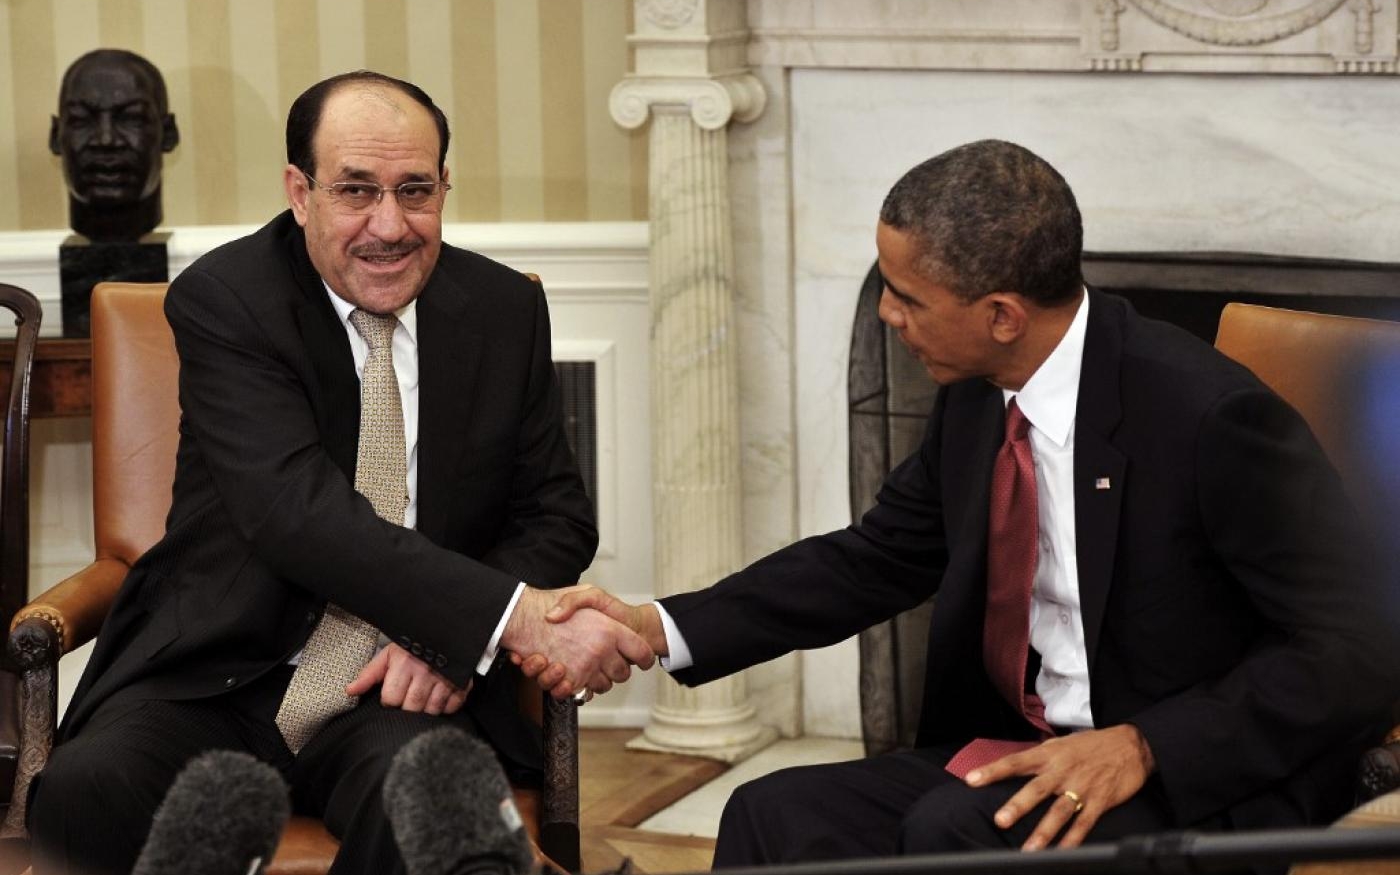 Le président américain Barack Obama serre la main du Premier ministre irakien Nouri al-Maliki lors d’une réunion à la Maison-Blanche en 2013 (AFP)